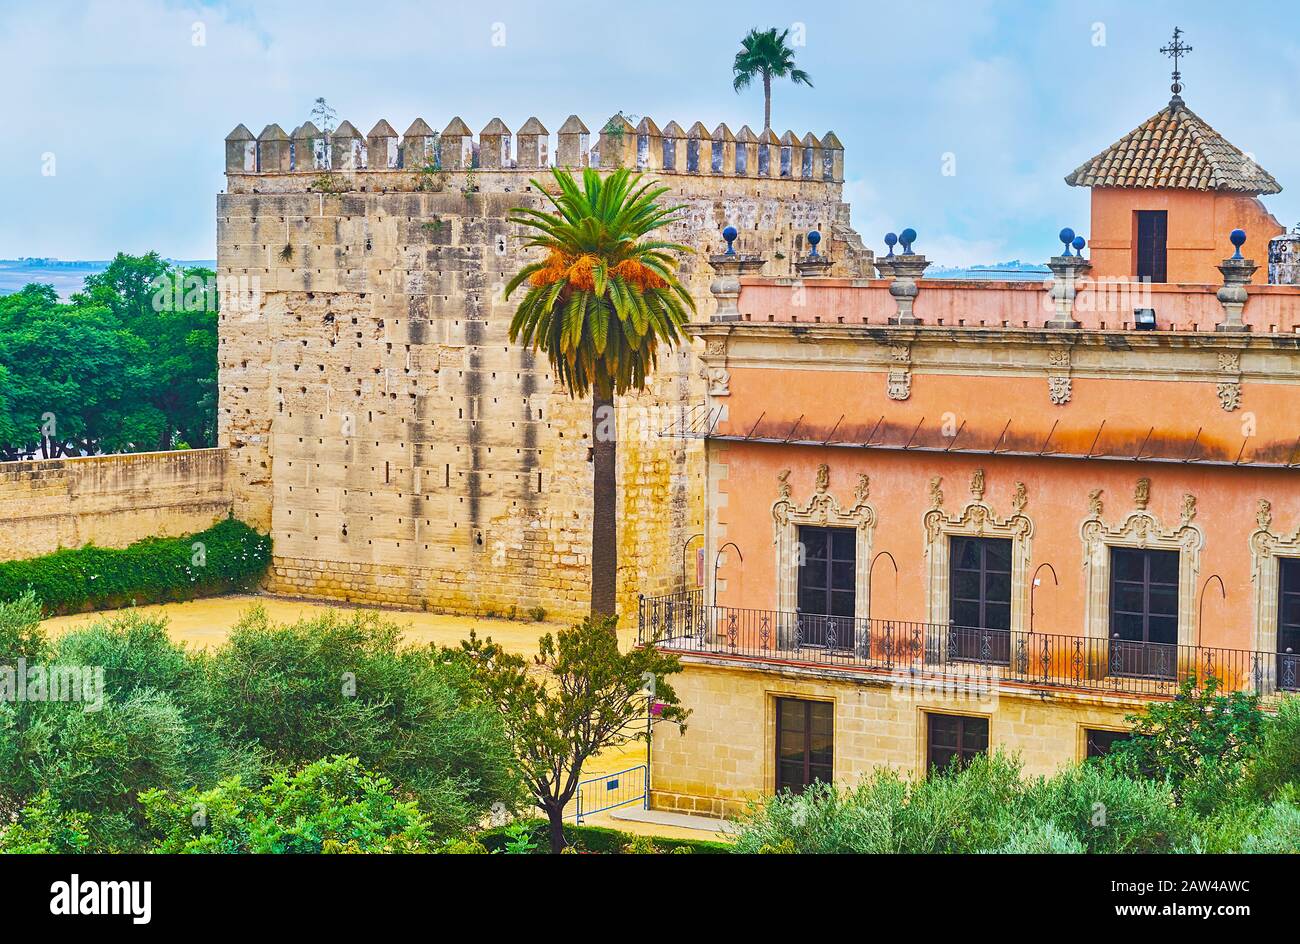 La enorme torre del homenaje y el vistoso palacio Villavicencio, rodeado por el jardín del Alcázar, Jerez, España Foto de stock